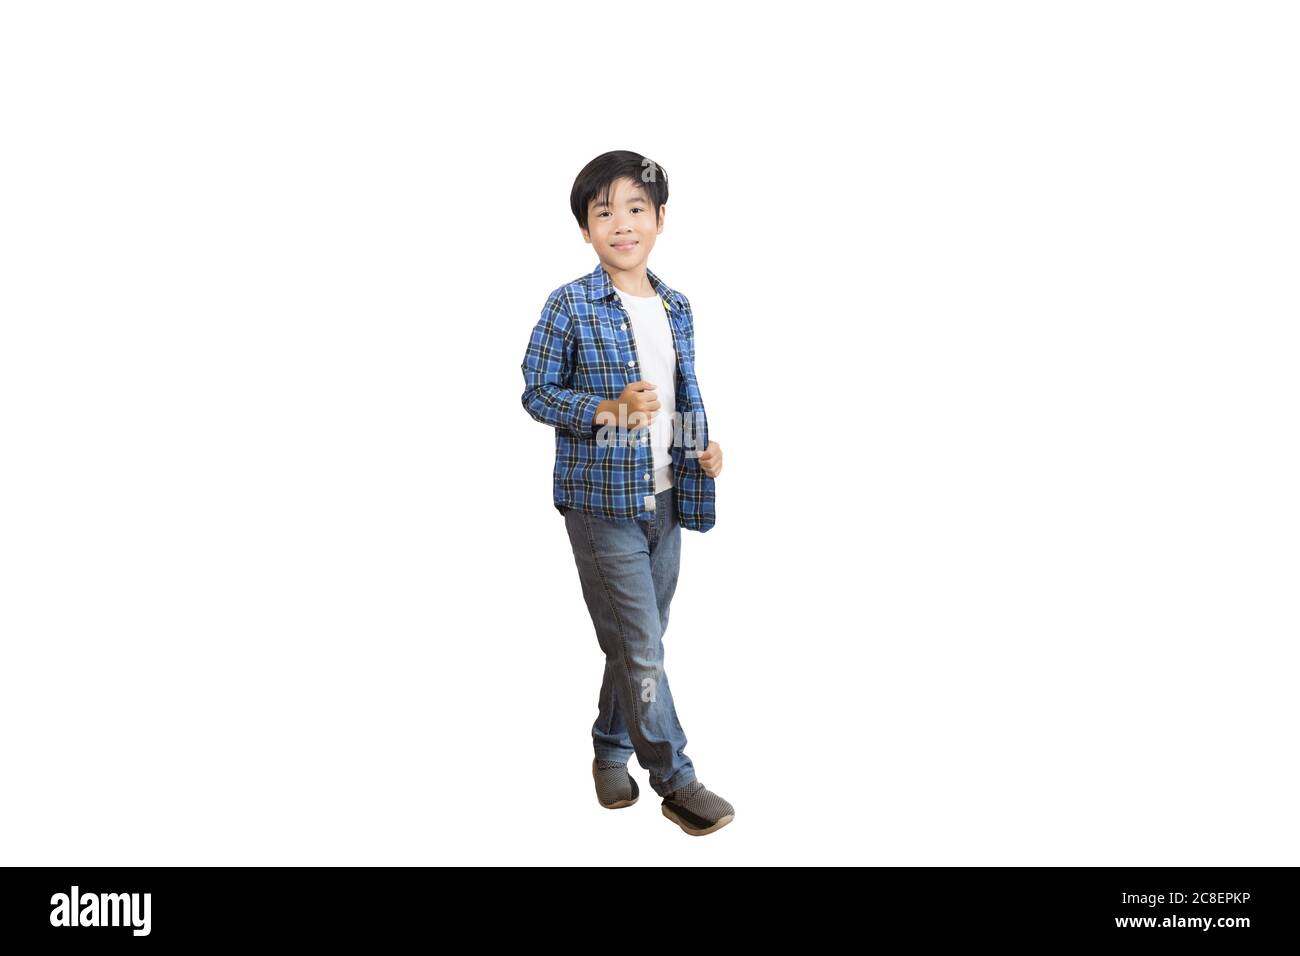 Un ritratto di un simpatico ragazzo asiatico della scuola elementare che indossa jeans e una camicia a maniche lunghe. Immagine isolata con sfondo bianco Foto Stock